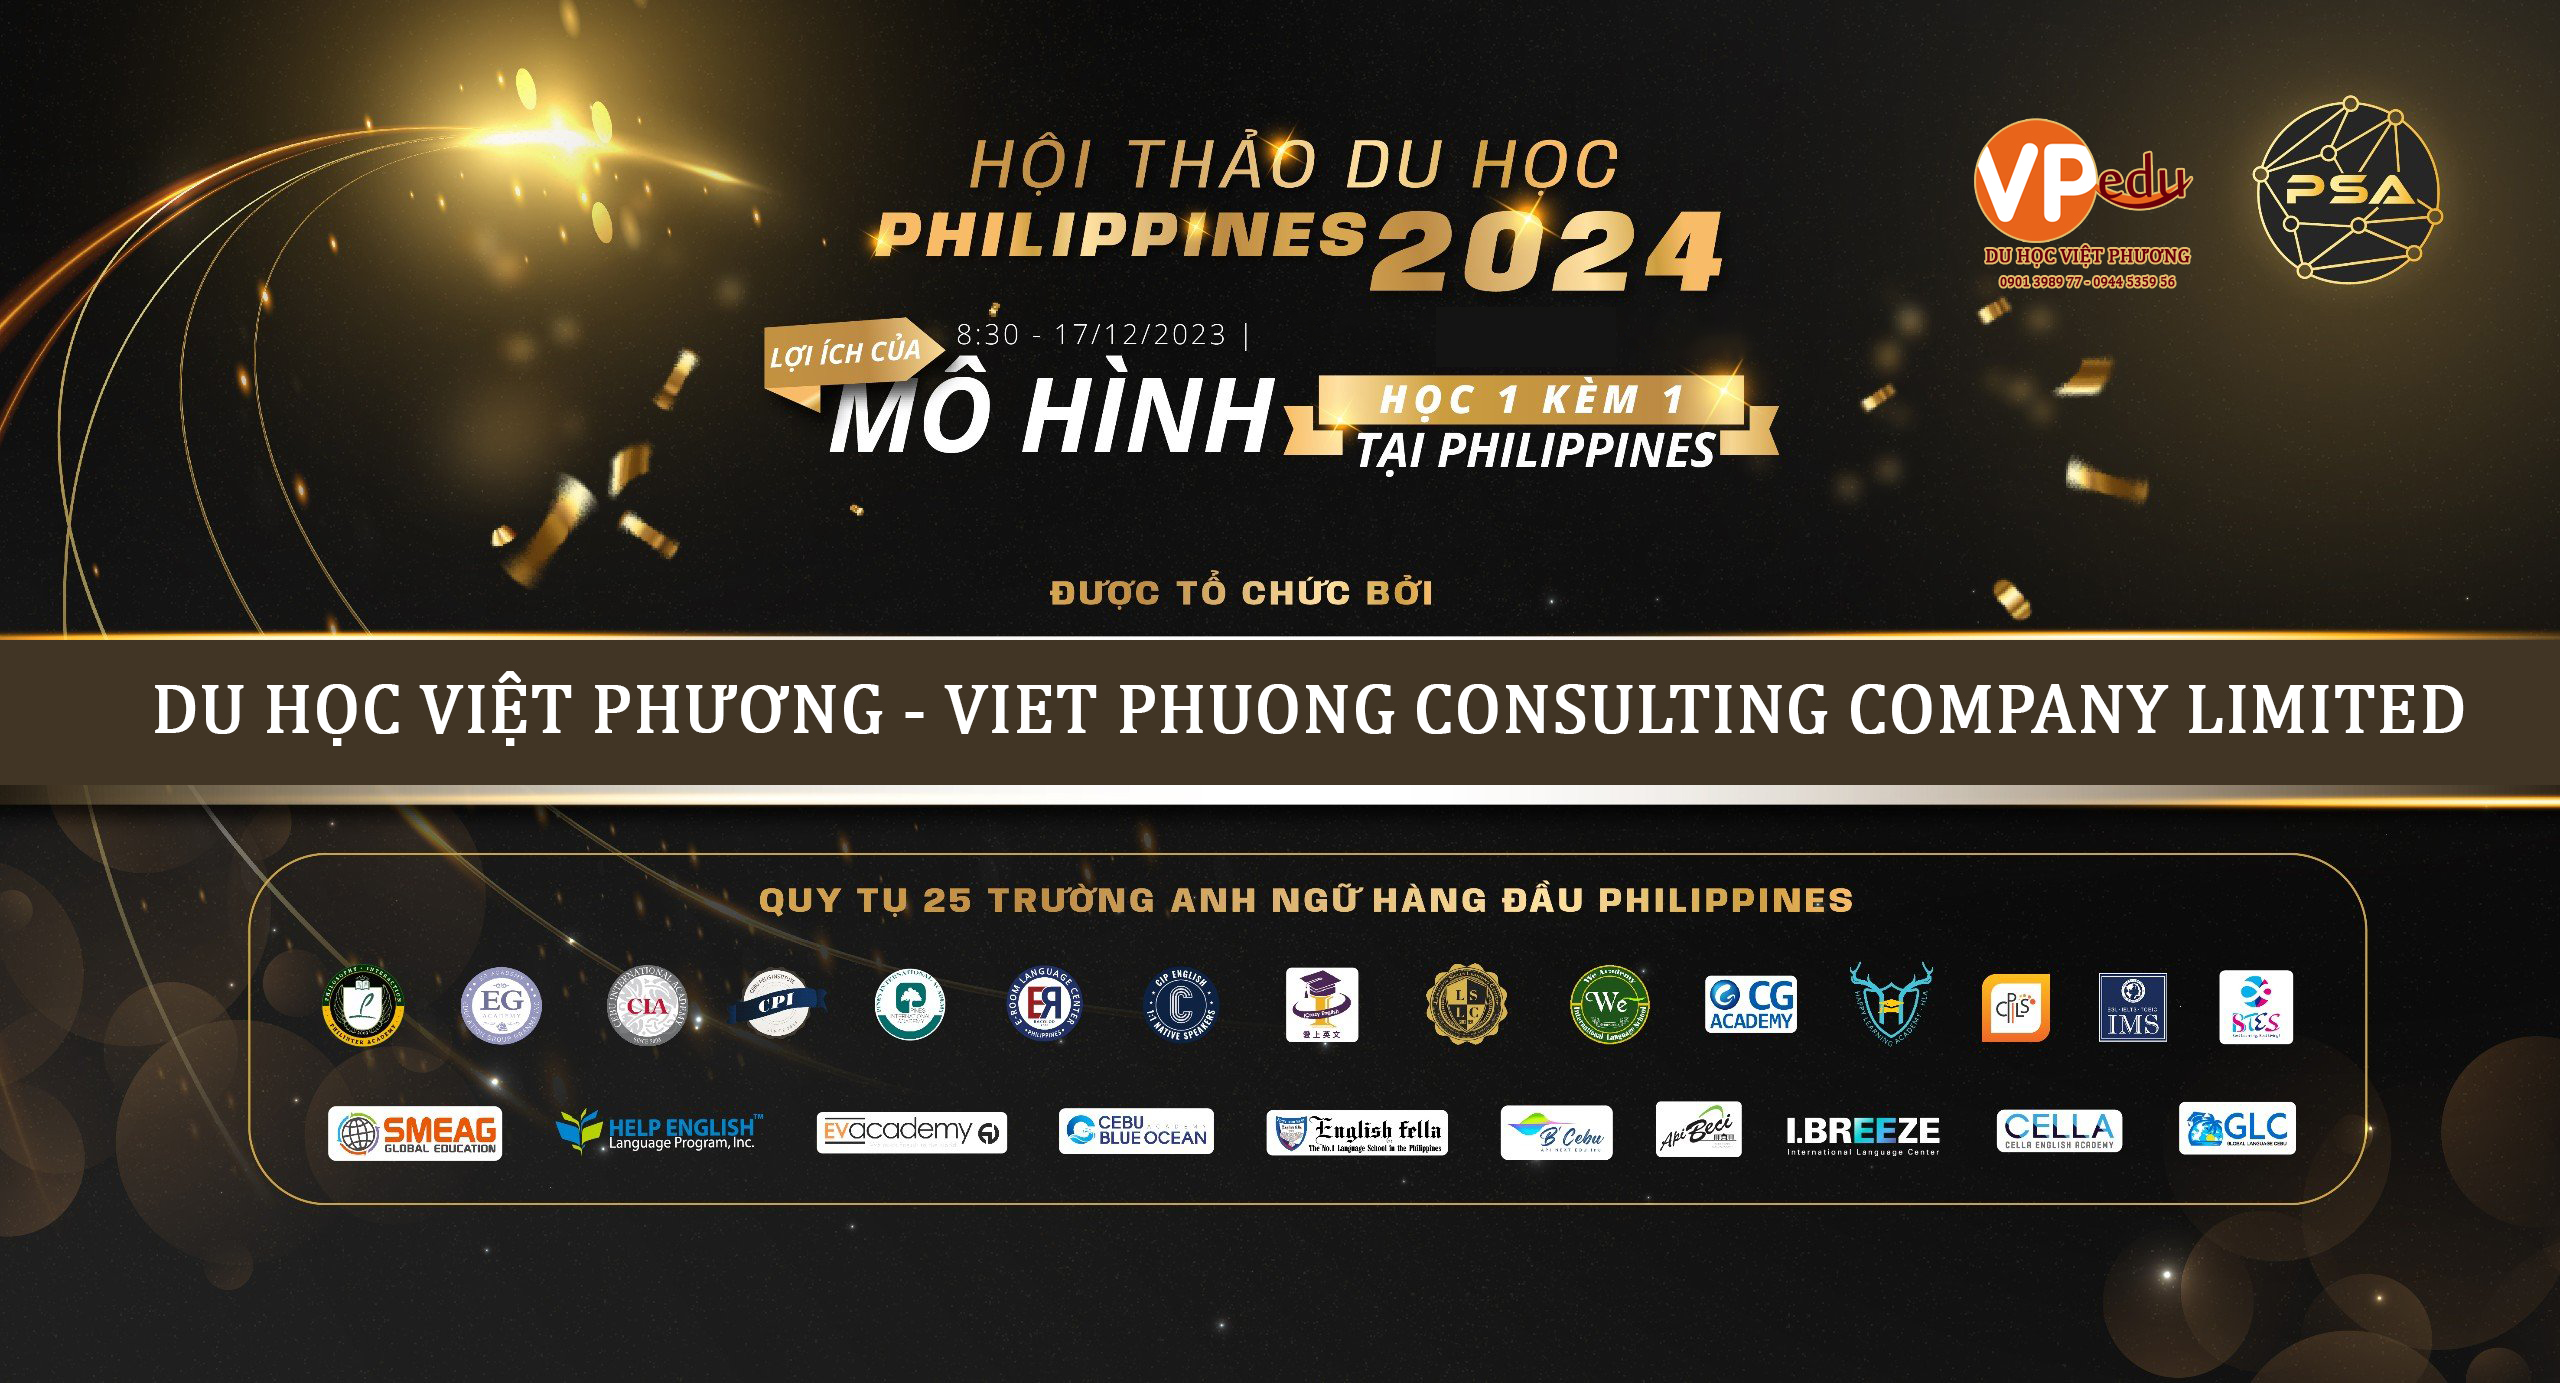 Du học Việt Phương - Đơn vị đồng tổ chức chương trình Hội Thảo Du học Philippines 2024